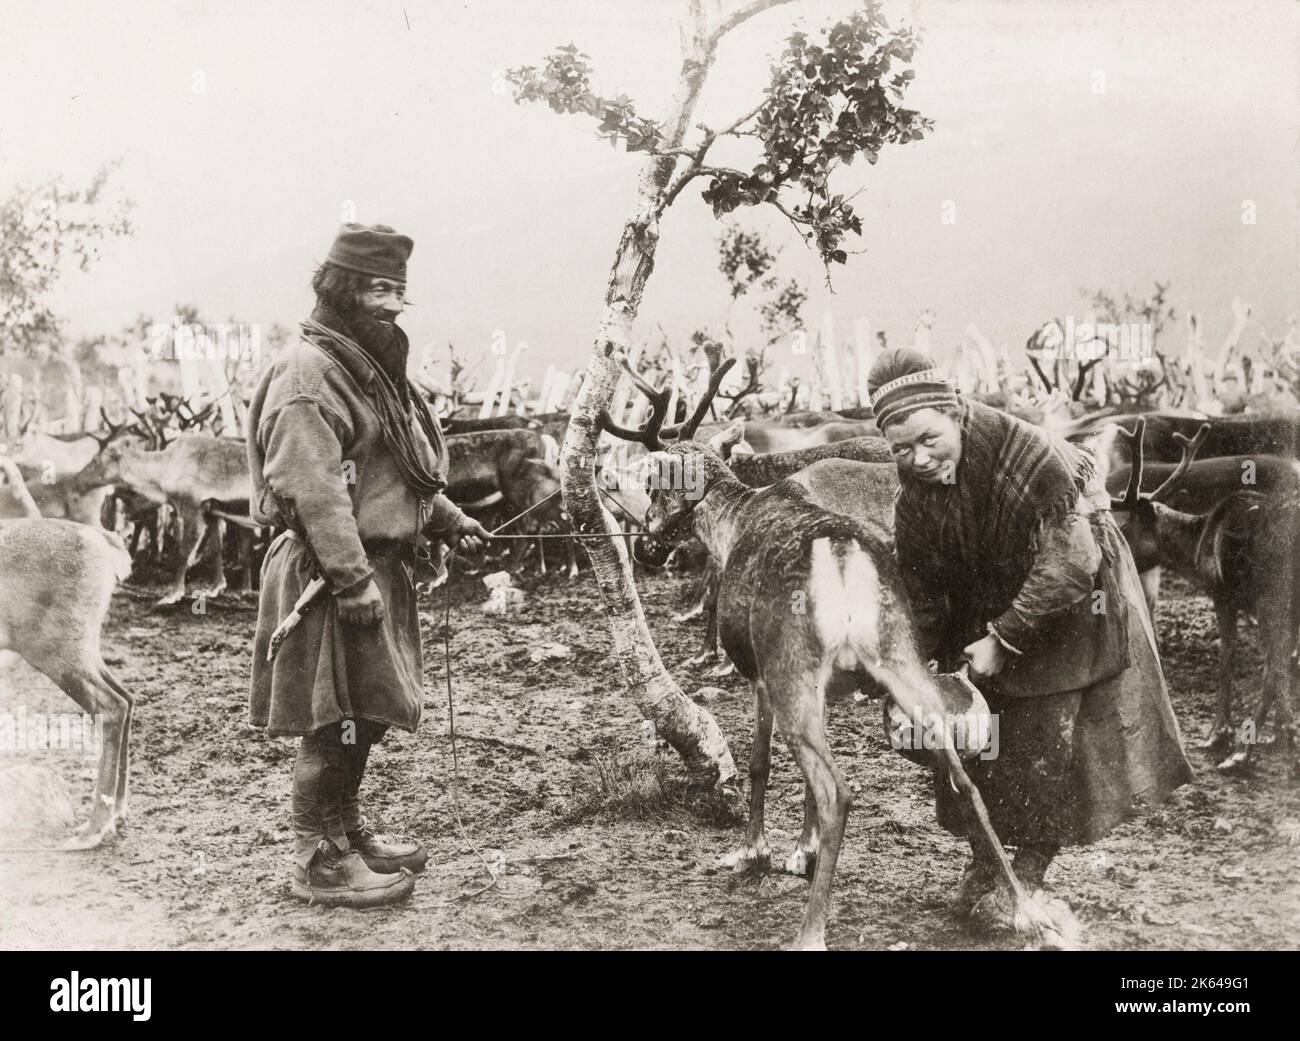 Photographie vintage du XIXe siècle : homme et femme sâmes qui milite un renne, Norvège. Banque D'Images